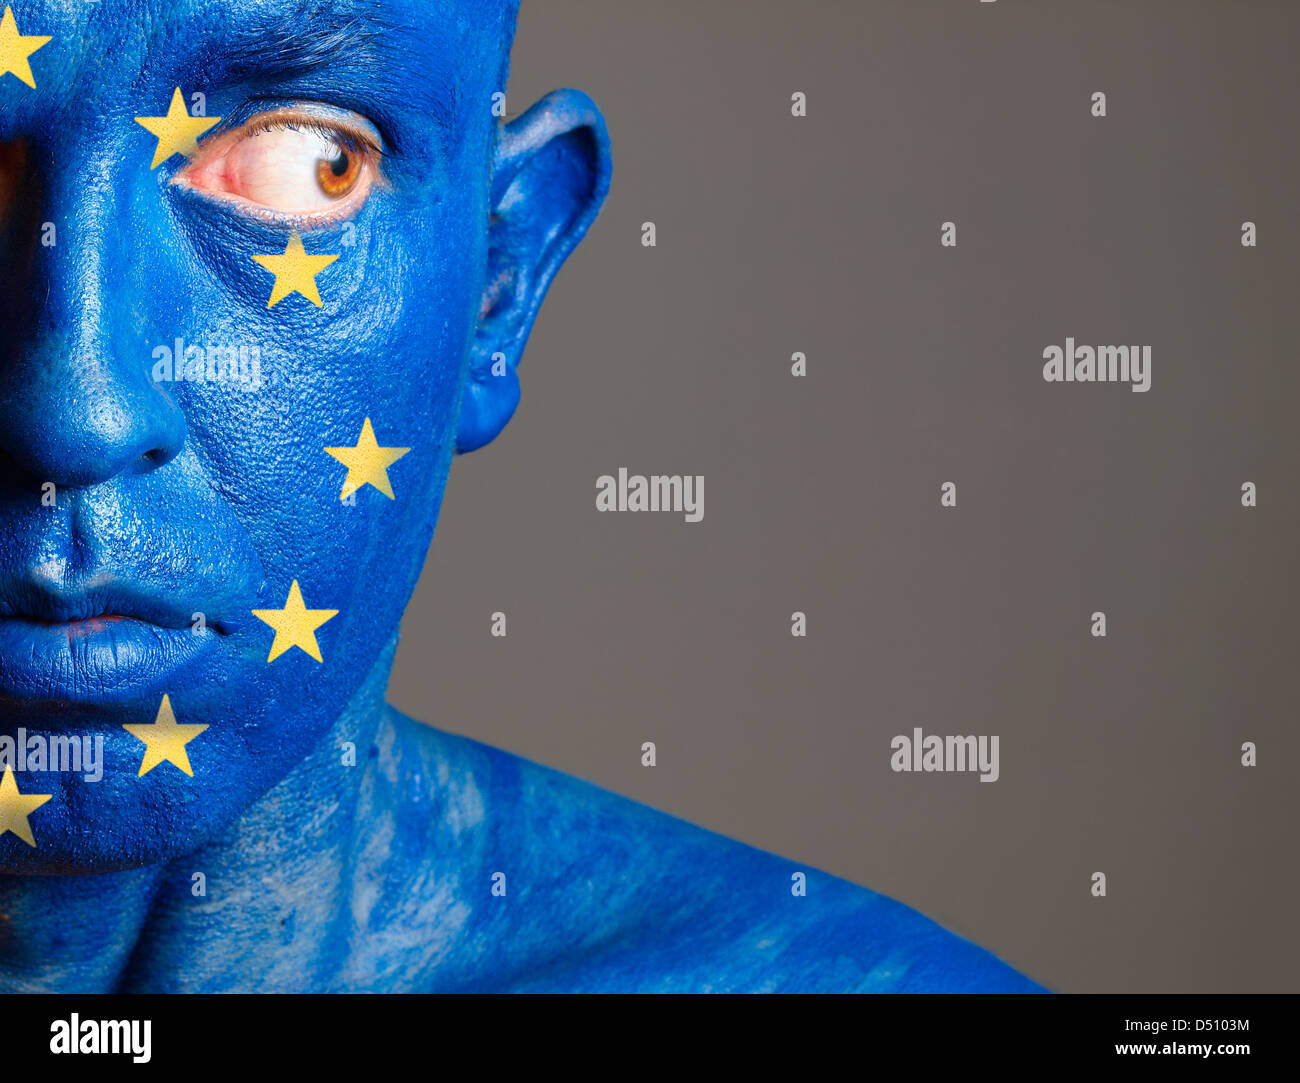 L'homme avec son visage peint avec le drapeau de l'Union européenne. L'homme est de regarder sur le côté et composition photographique ne laisse que hal Banque D'Images